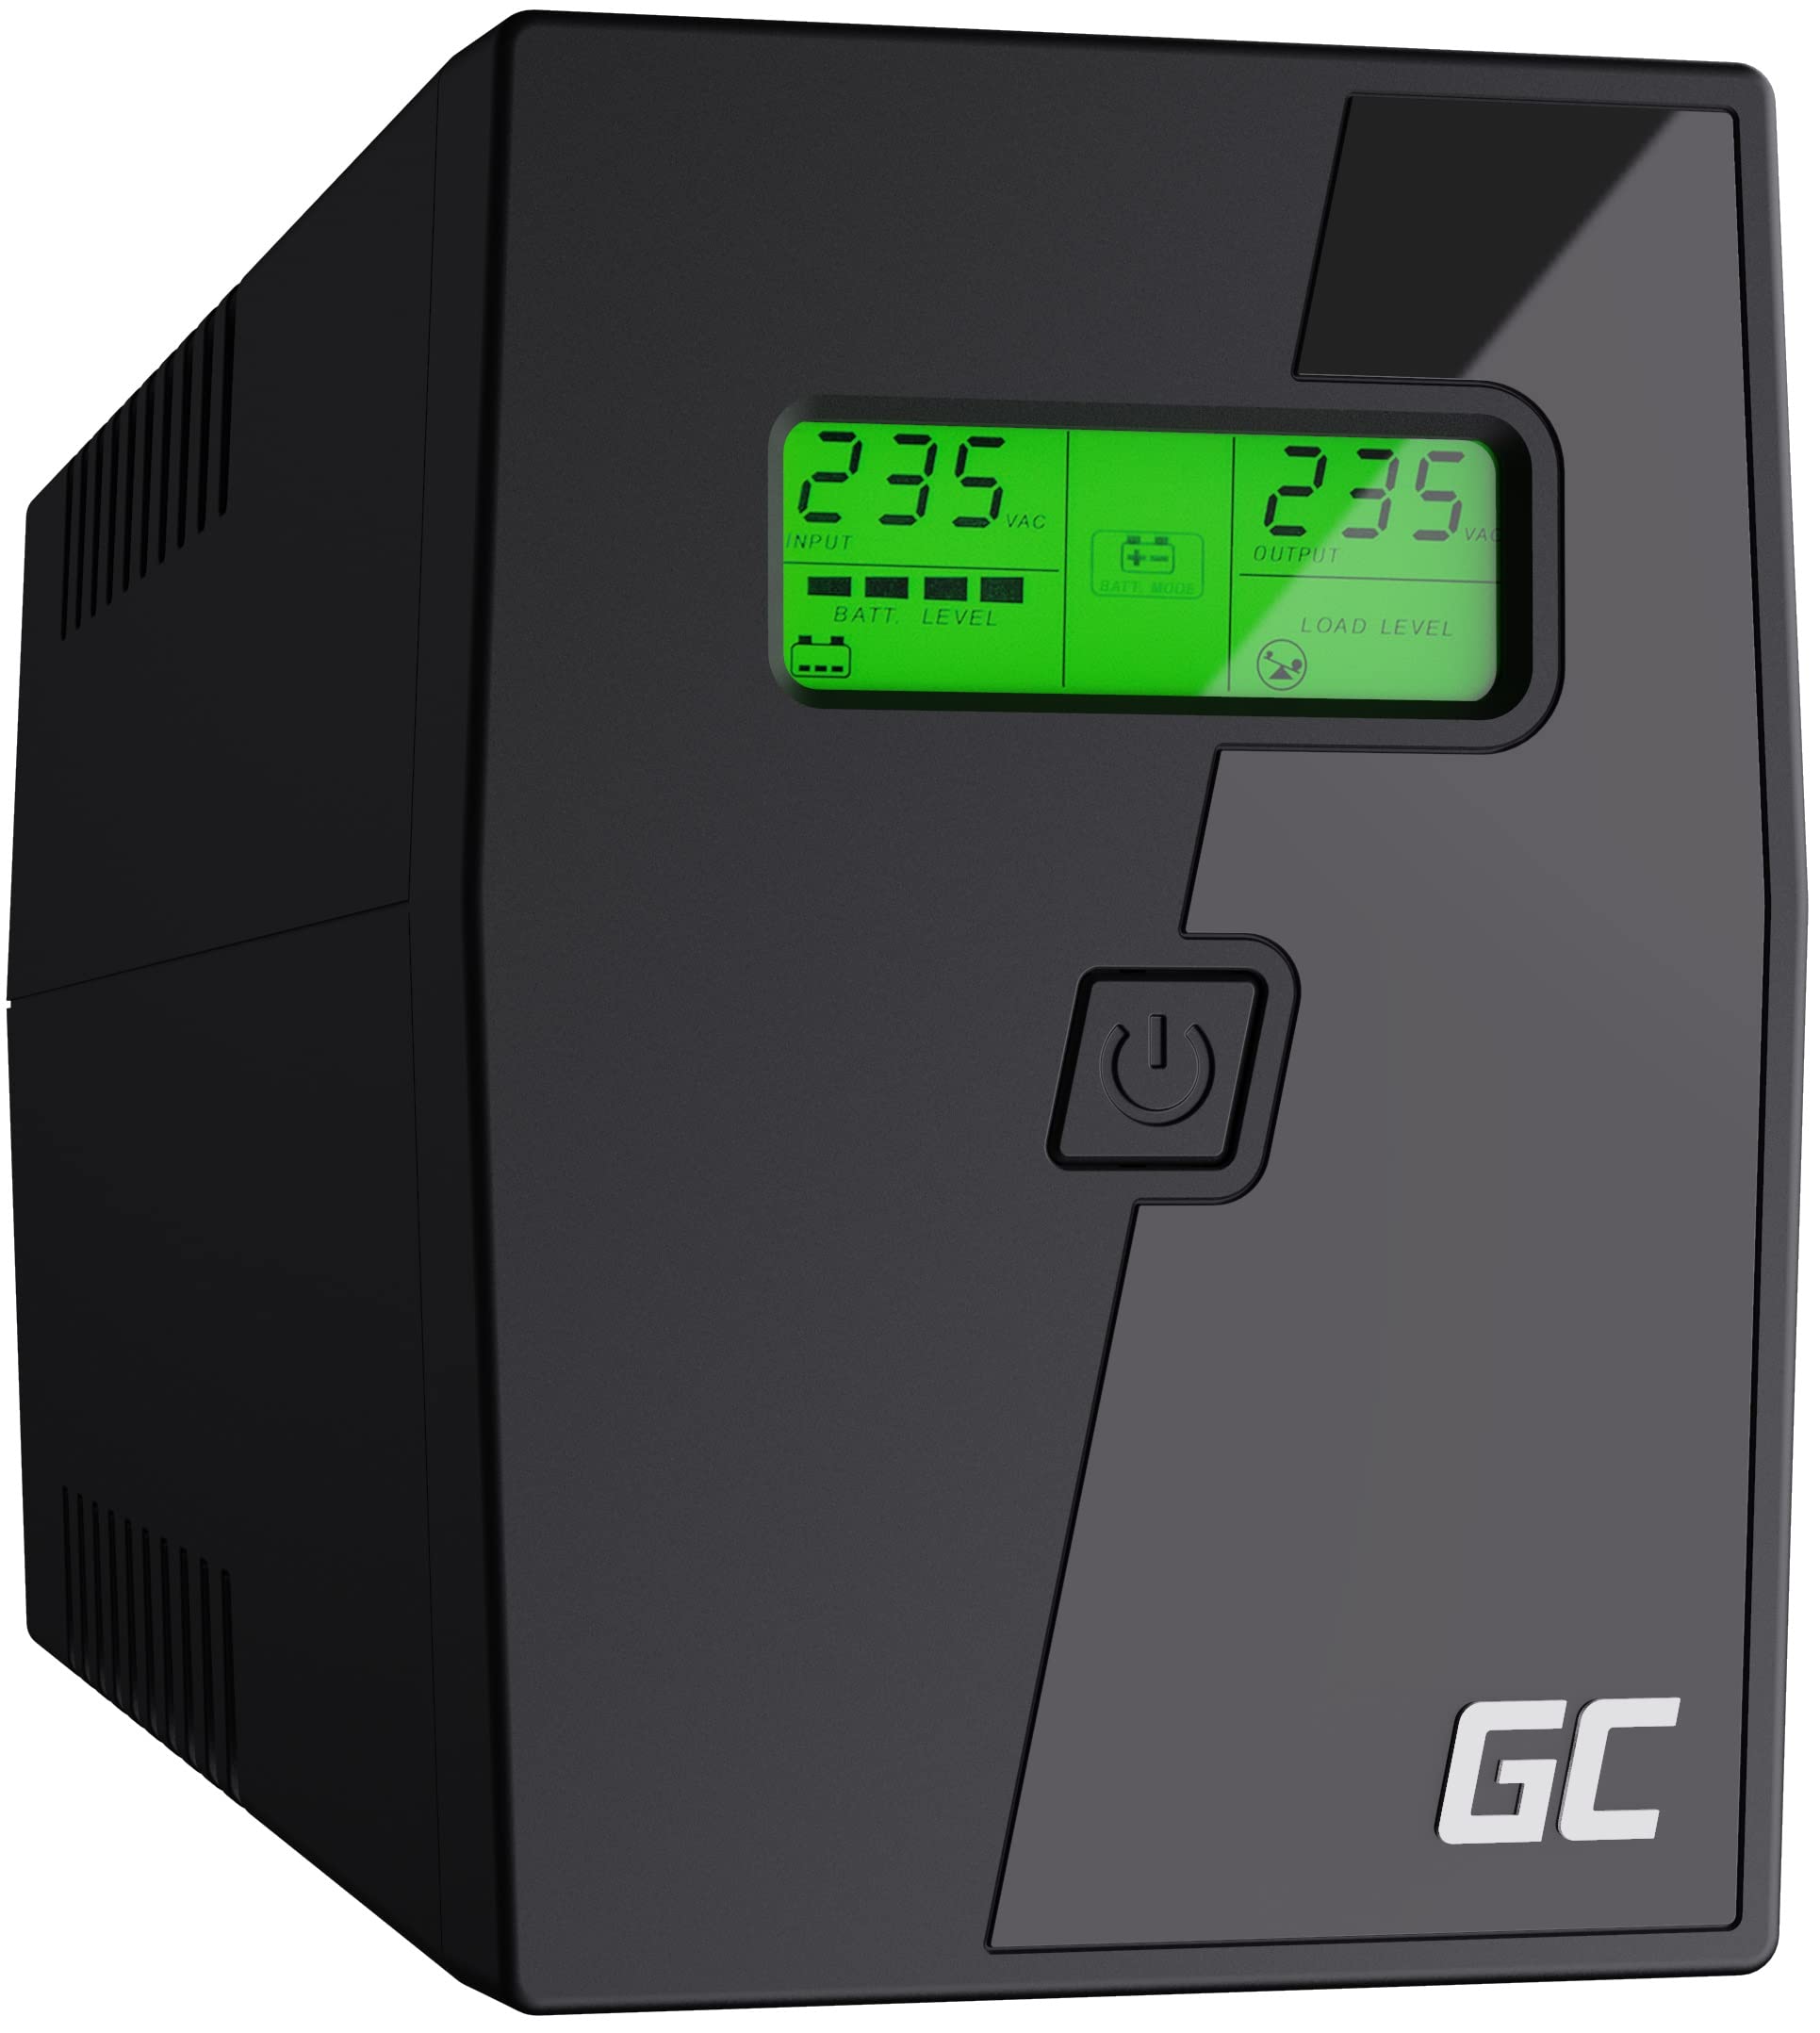 Green Cell USV 600VA 360W UPS Unterbrechungsfreie Stromversorgung mit spezielle GC Anwendung Überspannungsschutz 230V Line-Interactive Spannungsregelung AVR USV-Anlage USB/RJ11 2X Schuko LCD Display